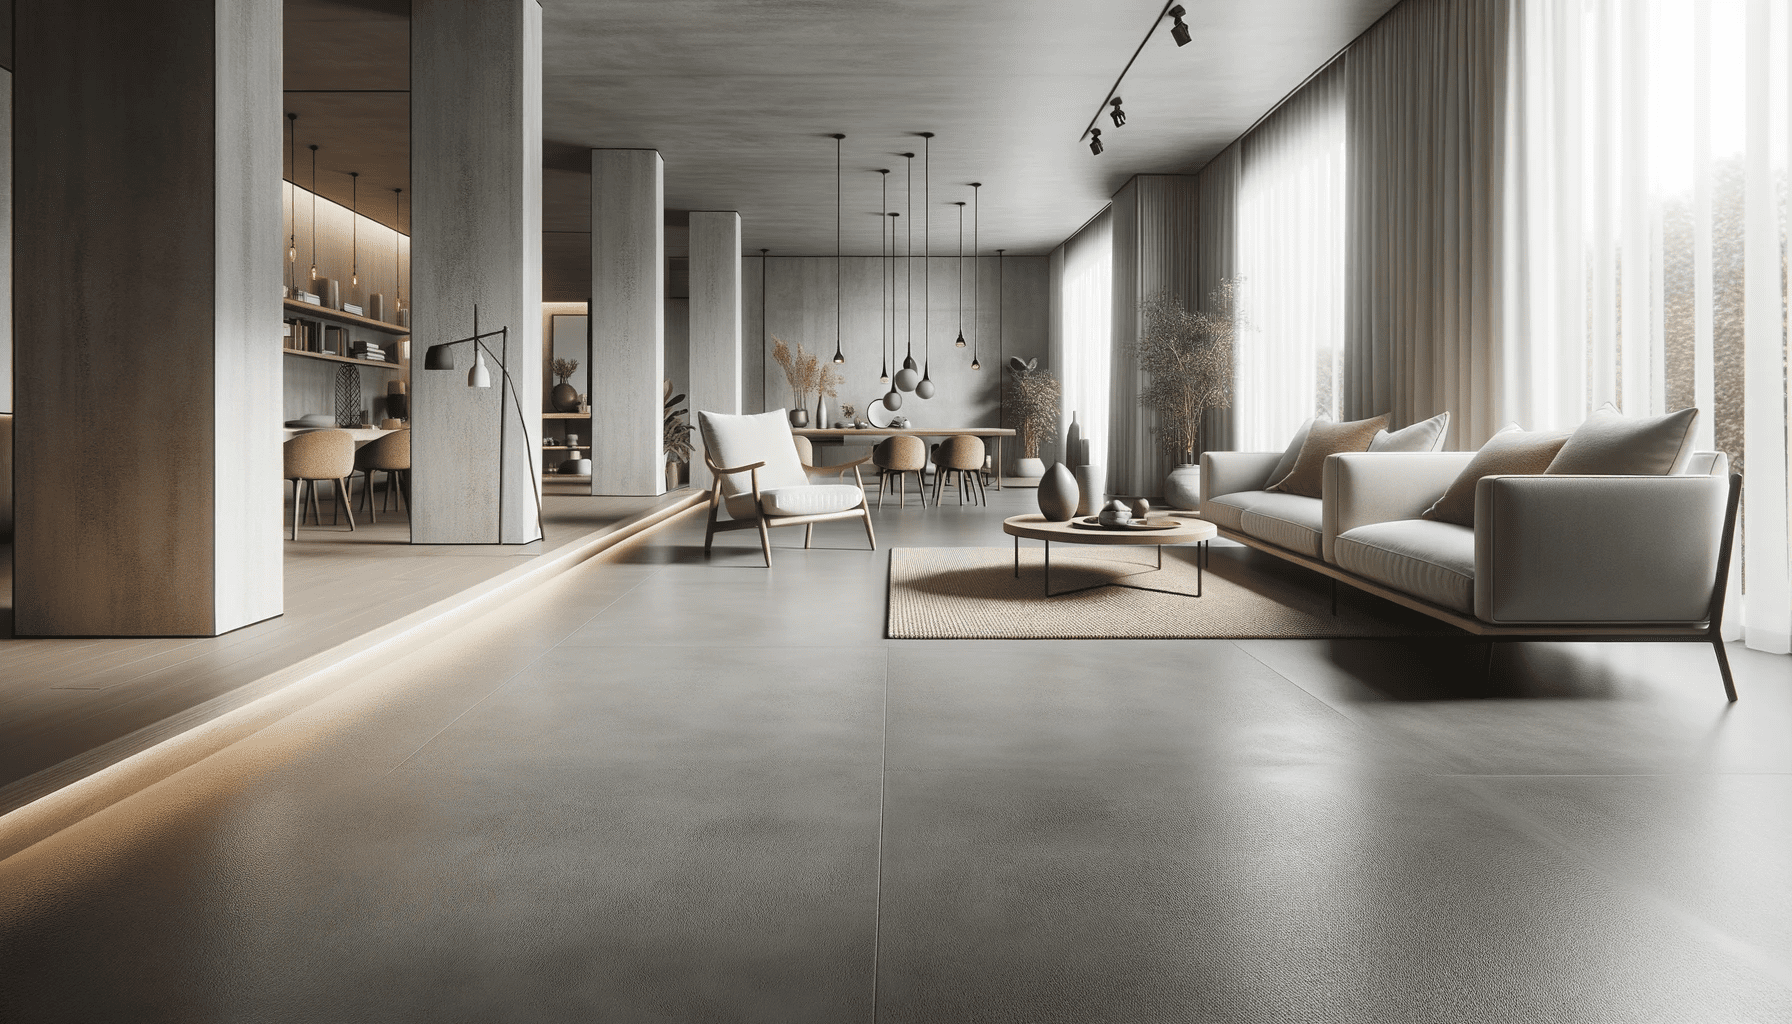 Wunderschön fertiggestellter Estrichboden in einem modernen Wohnraum mit minimalistischen Möbeln.